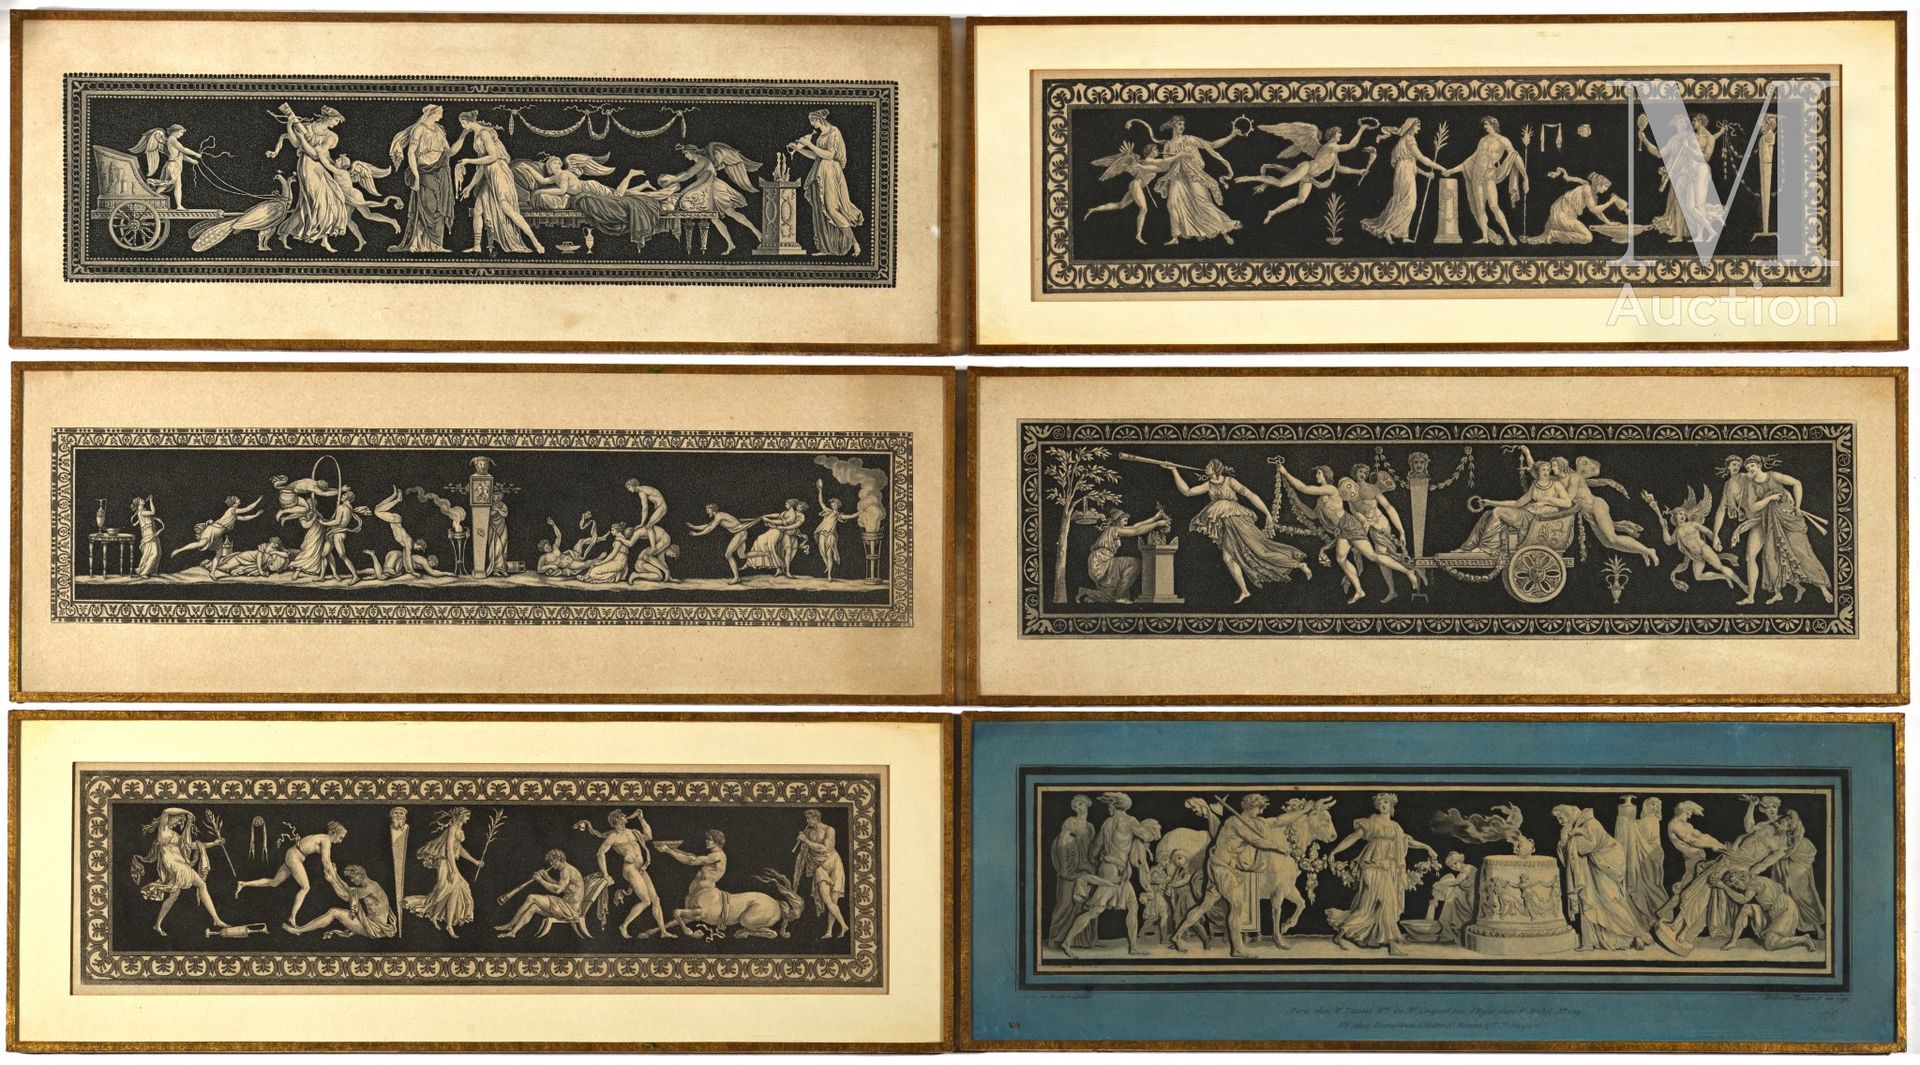 Six gravures de bajorrelieve en estilo antiguo, bajo vidrio. 

Finales del siglo&hellip;